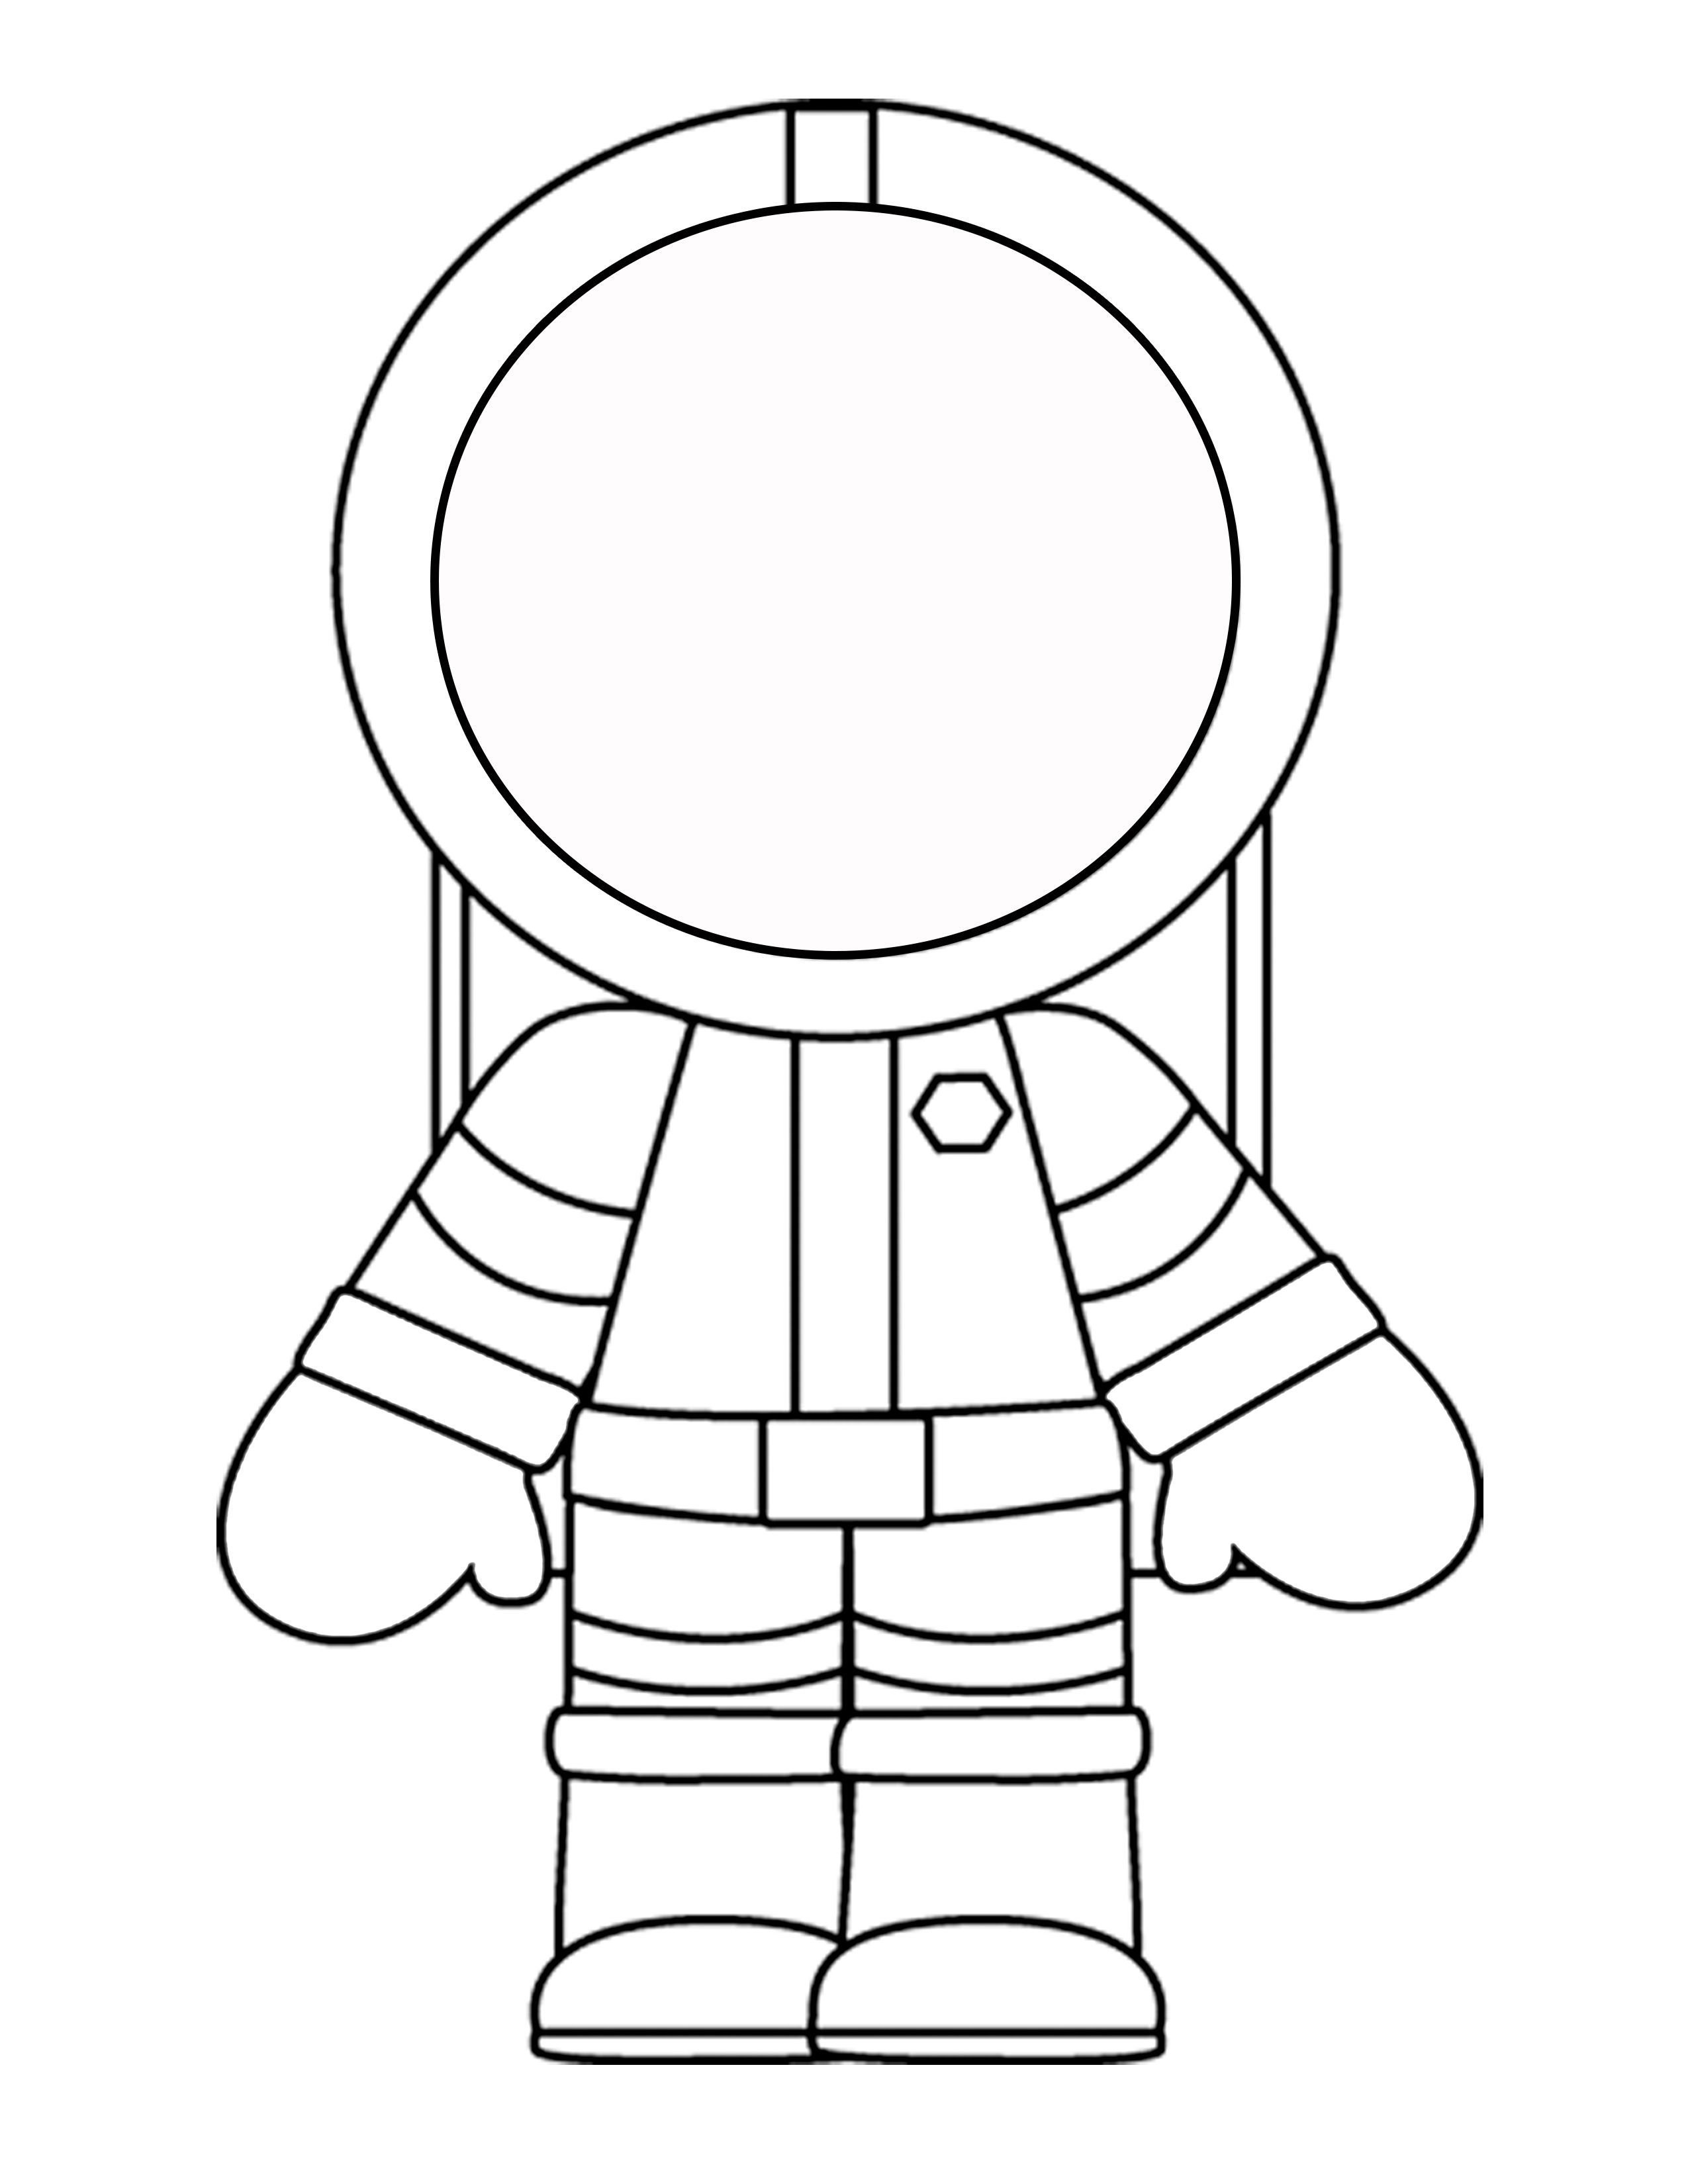 Поделка ко дню космонавтики шаблоны распечатать. Космонавт раскраска для детей. Космонавт раскраска для малышей. Раскраска Космонавта в скафандре для детей. Rjcvjyfdnраскраска для детей.